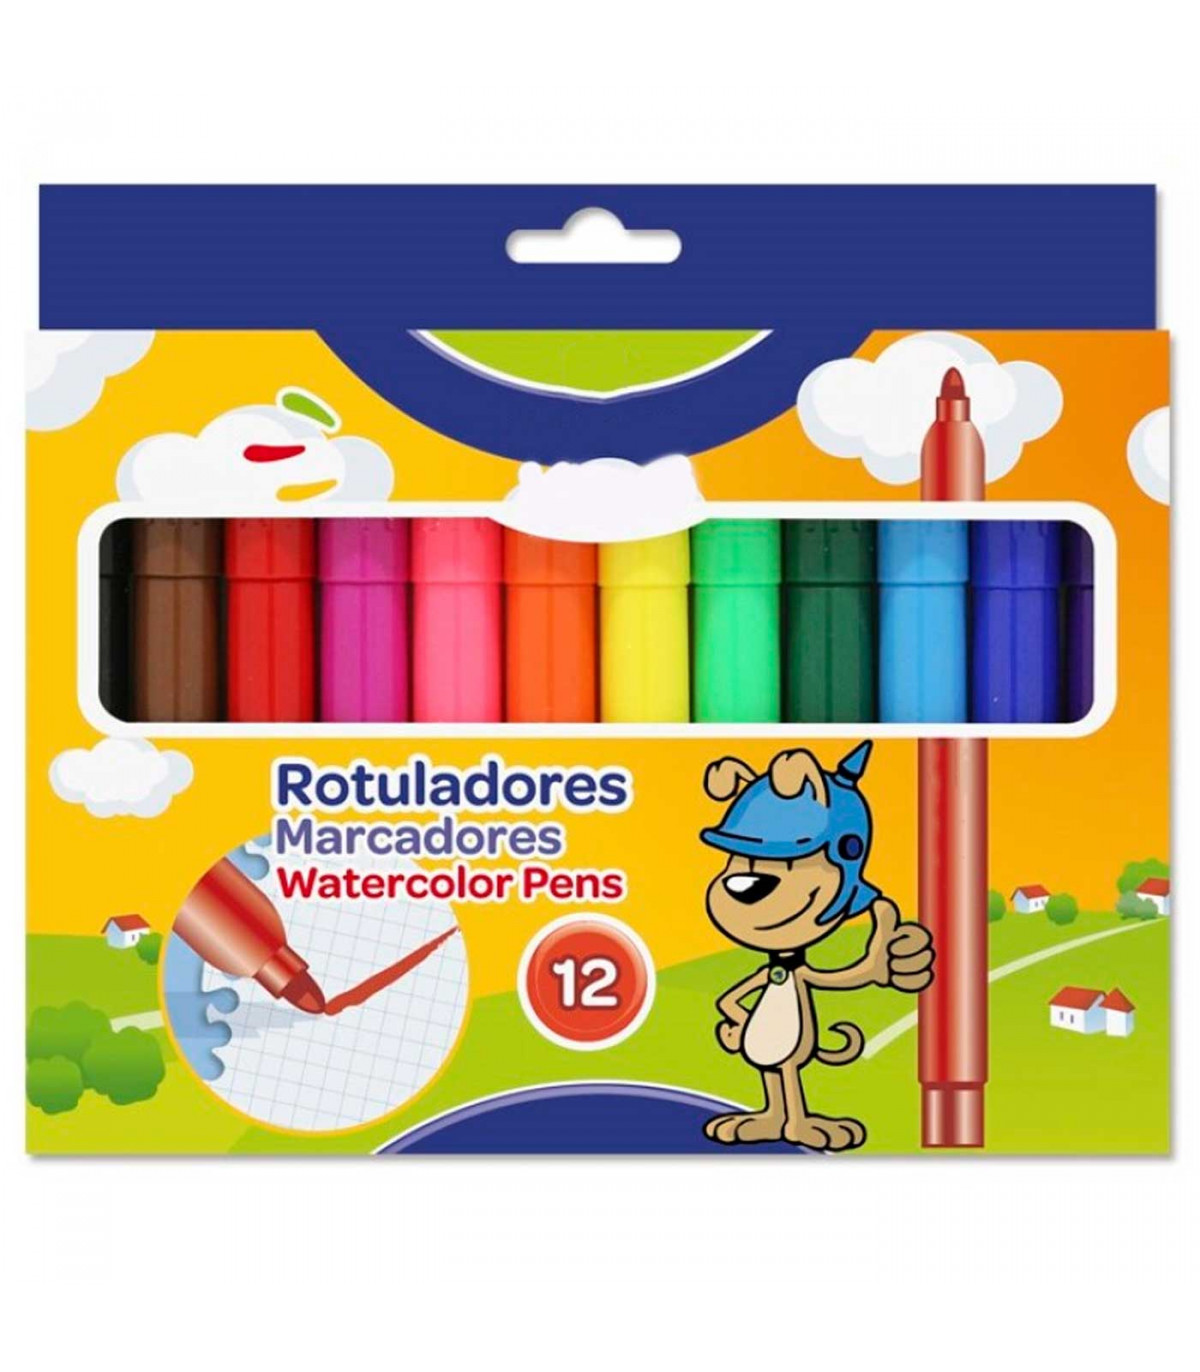 Tradineur - Caja de 12 rotuladores gruesos de colores para niños